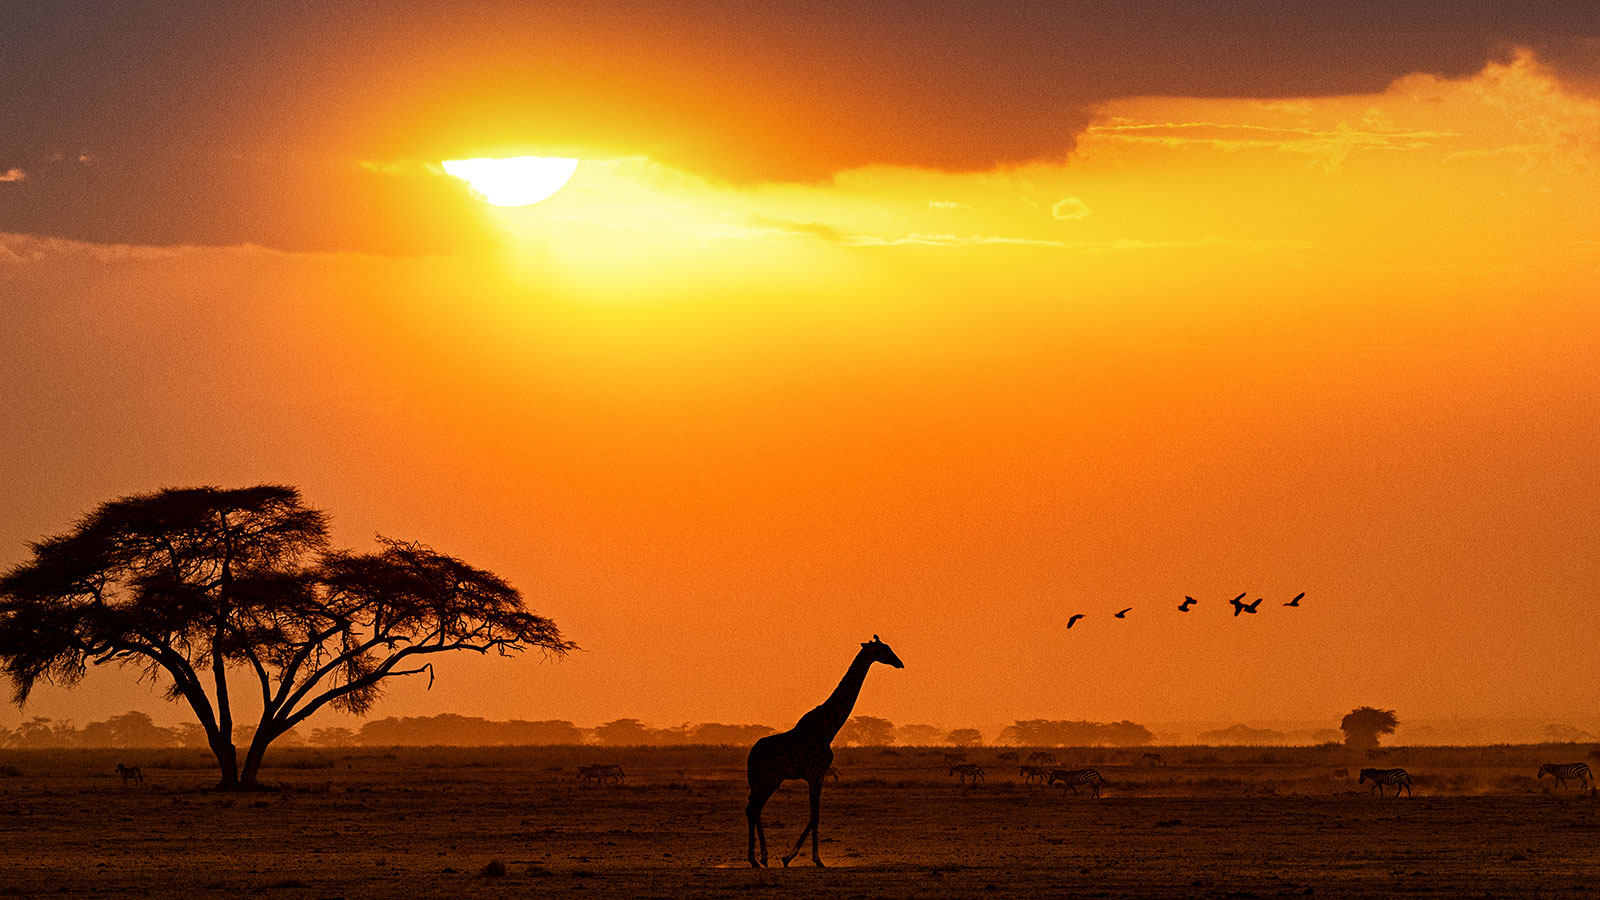 03 2 - Celebre o Dia Mundial da Girafa com a Dumela Filmes e descubra como contar histórias únicas com perspectiva e criatividade